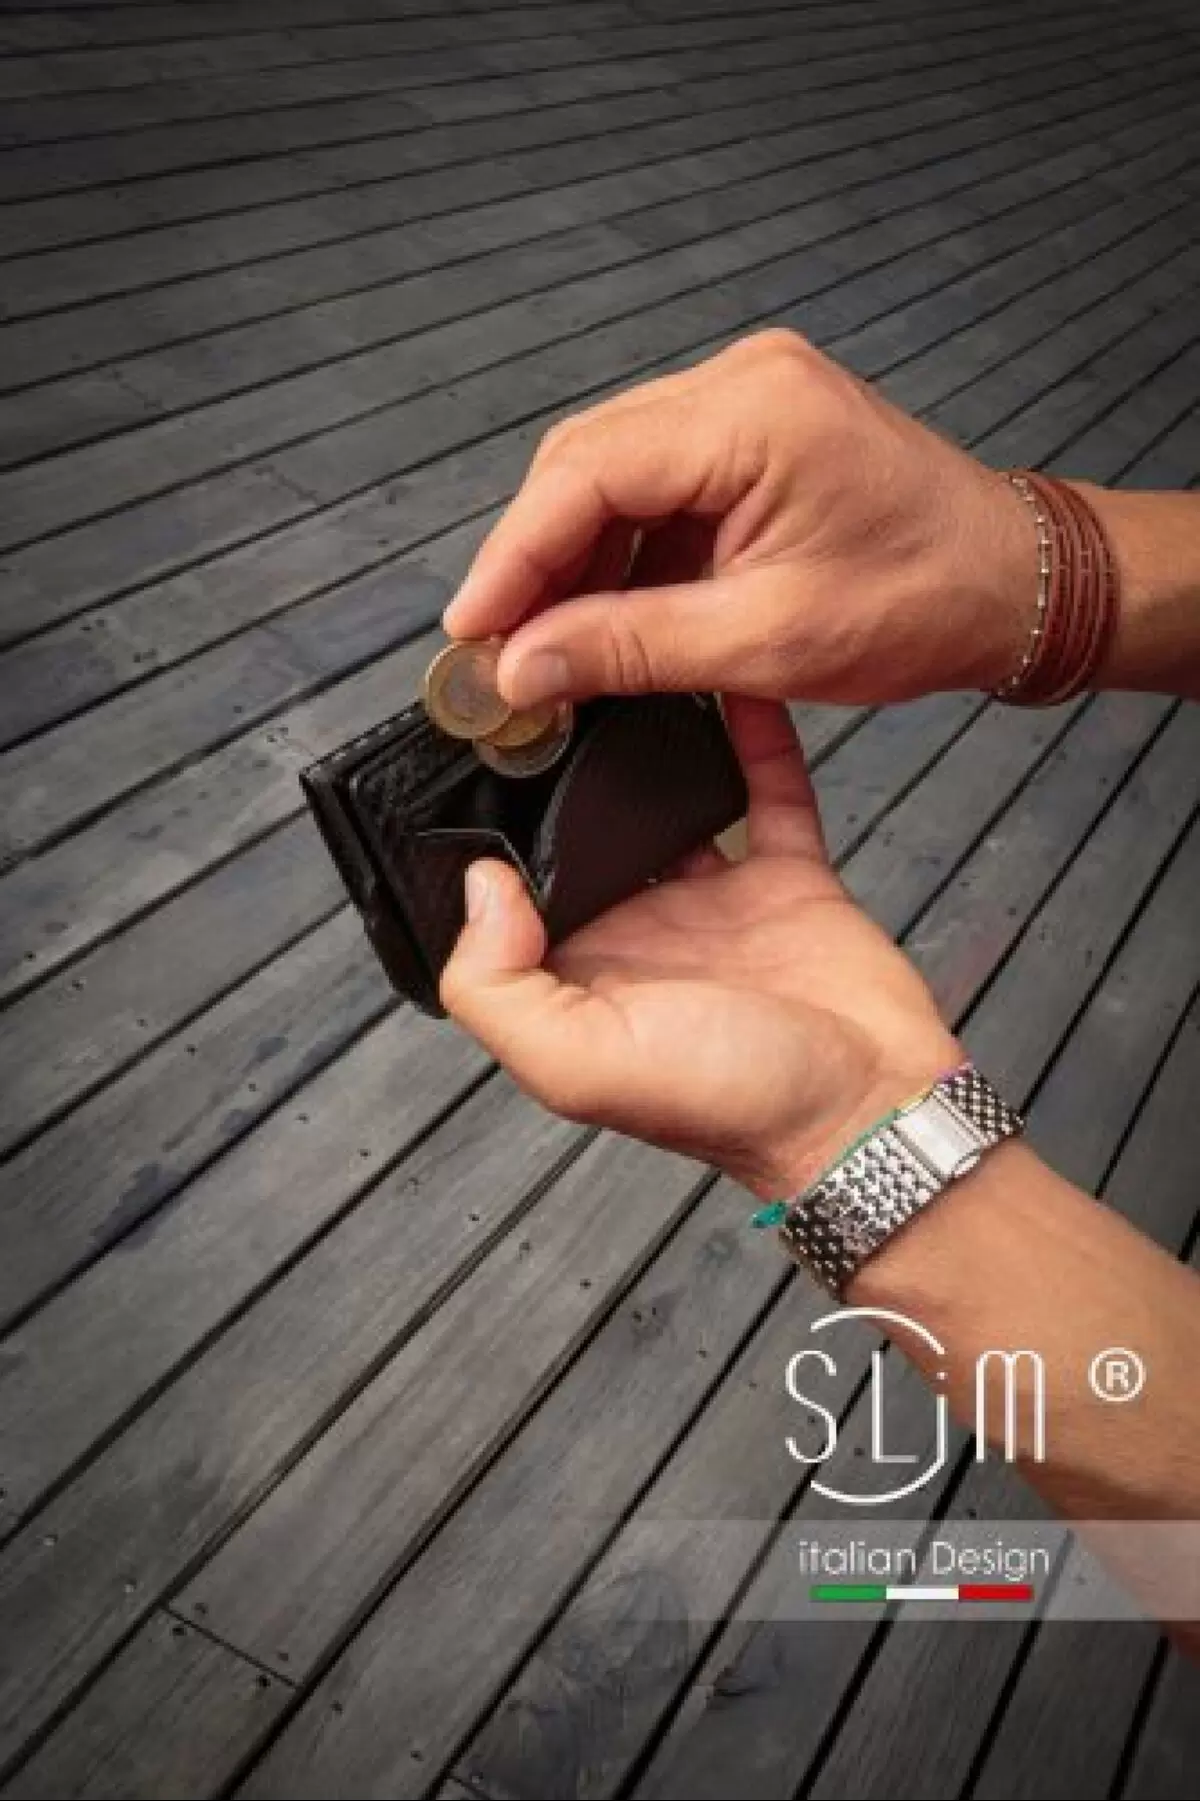 Porta carte di credito SLim® in pelle carbon fiber nero con zip